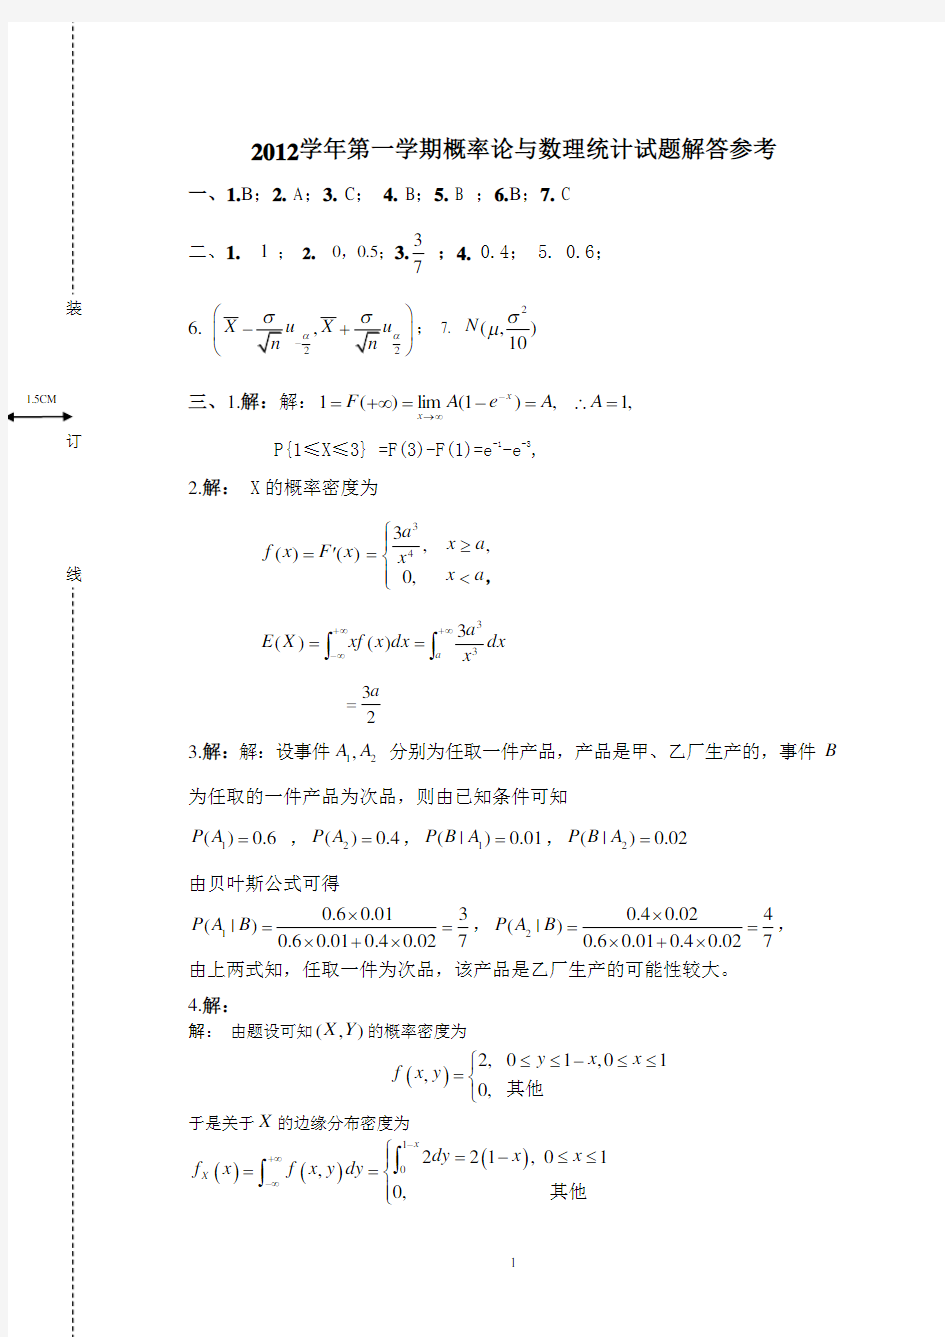 华农-2012-2013下概率论与数理统计答案3